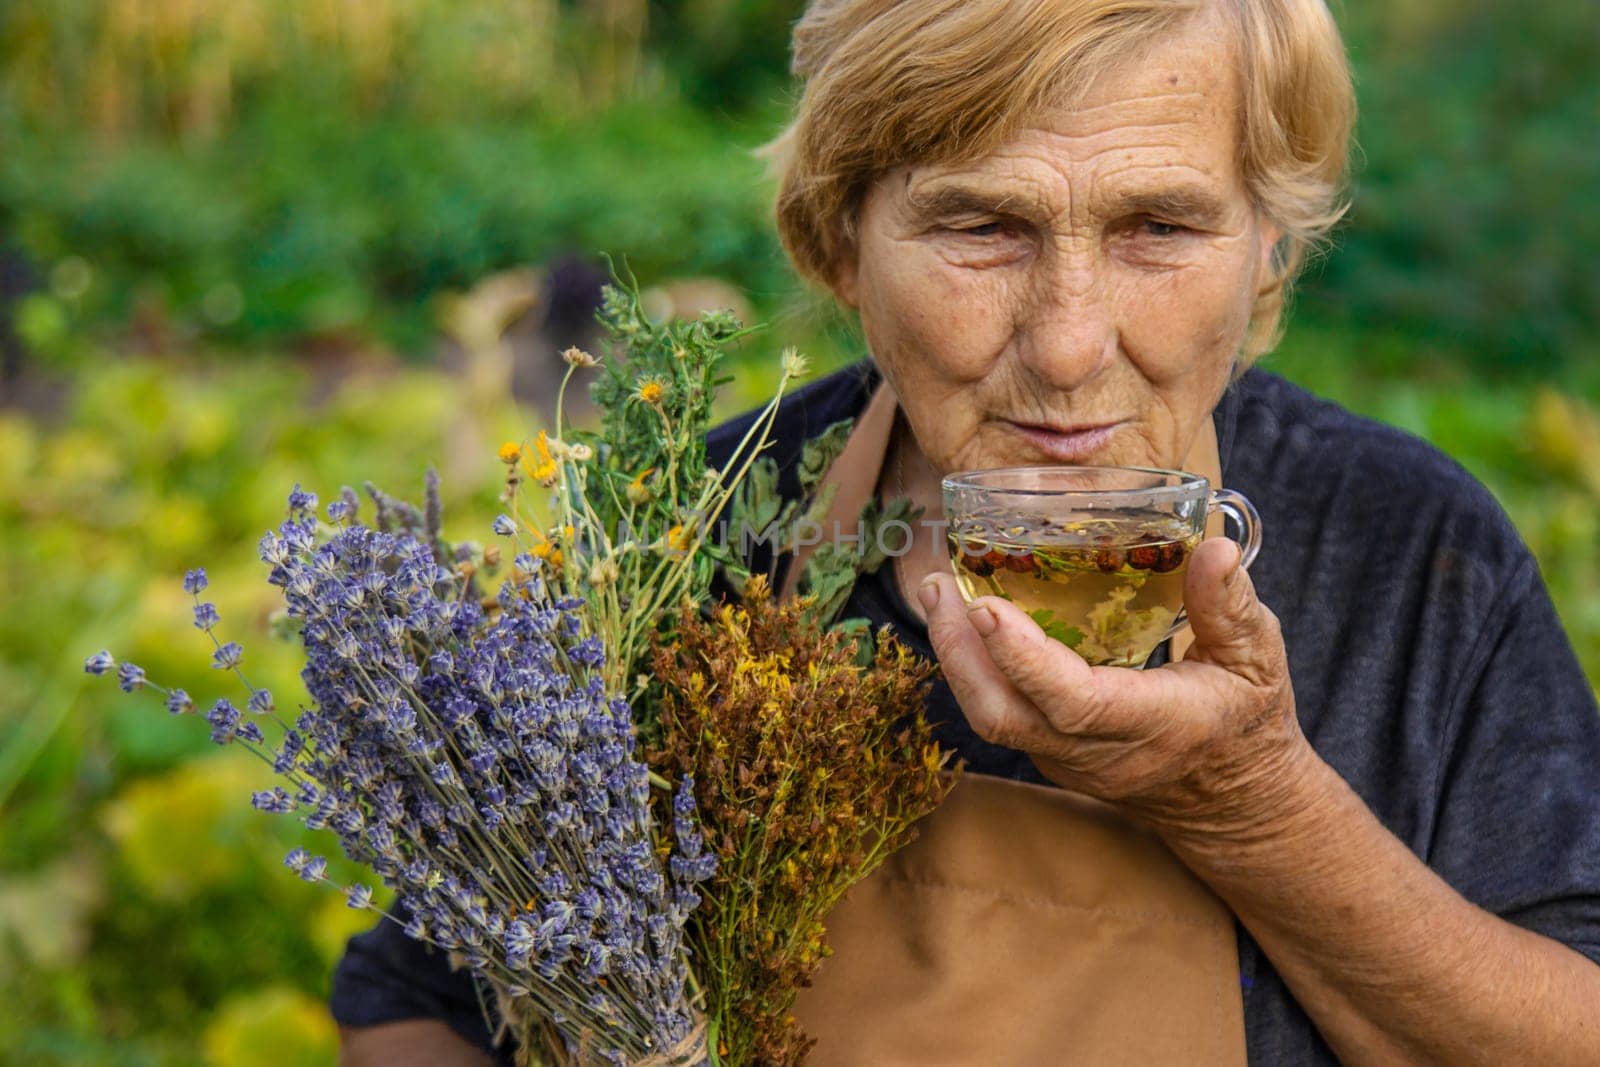 An elderly woman brews herbal tea. Selective focus. by yanadjana